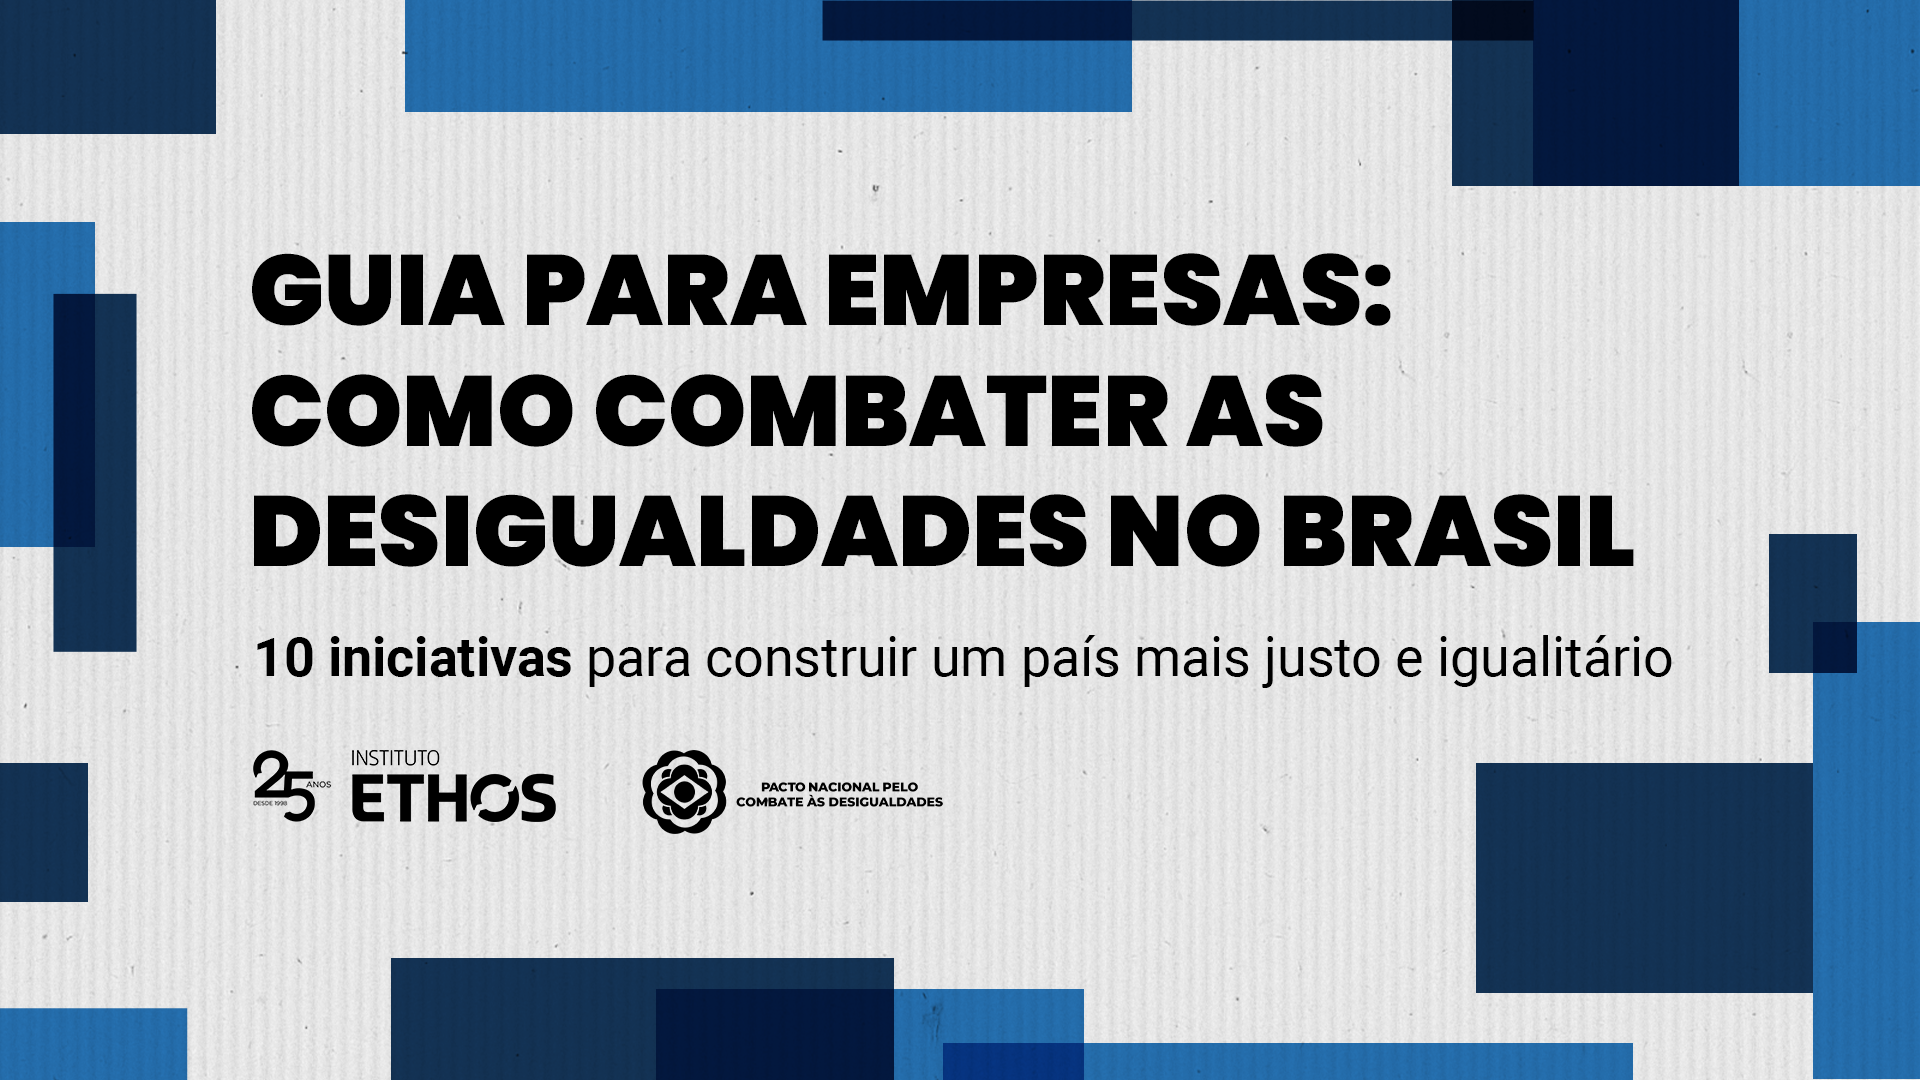 Guia para empresas: como combater as desigualdades no Brasil